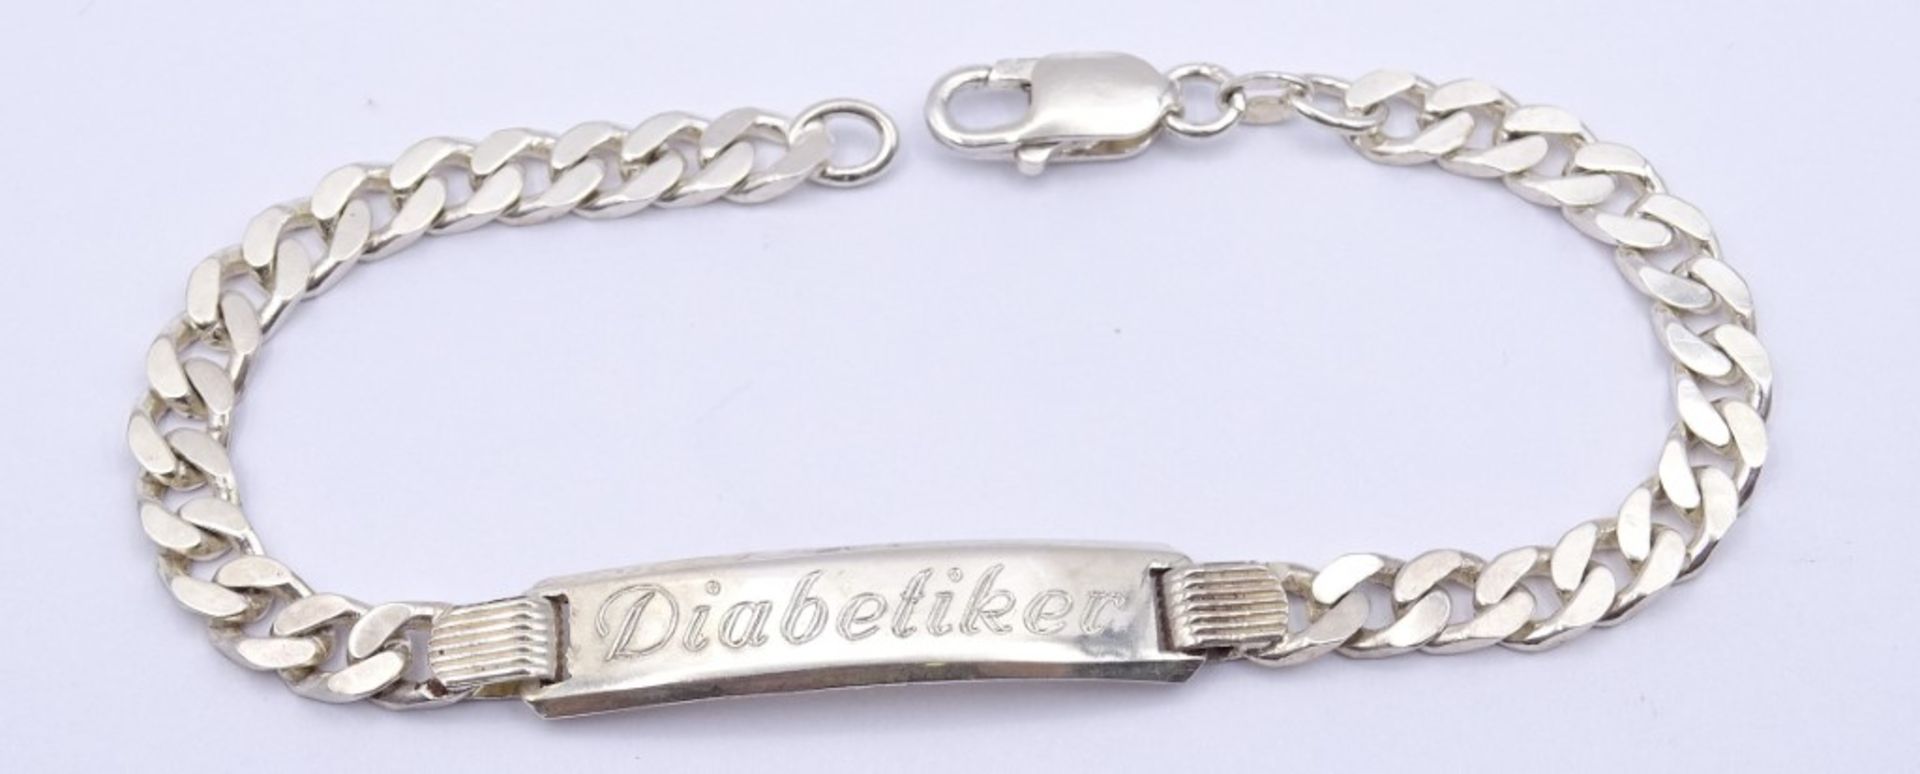 925er Silber Herren Armband mit Gravur "Diabetiker", L. 22cm, 16,6g.